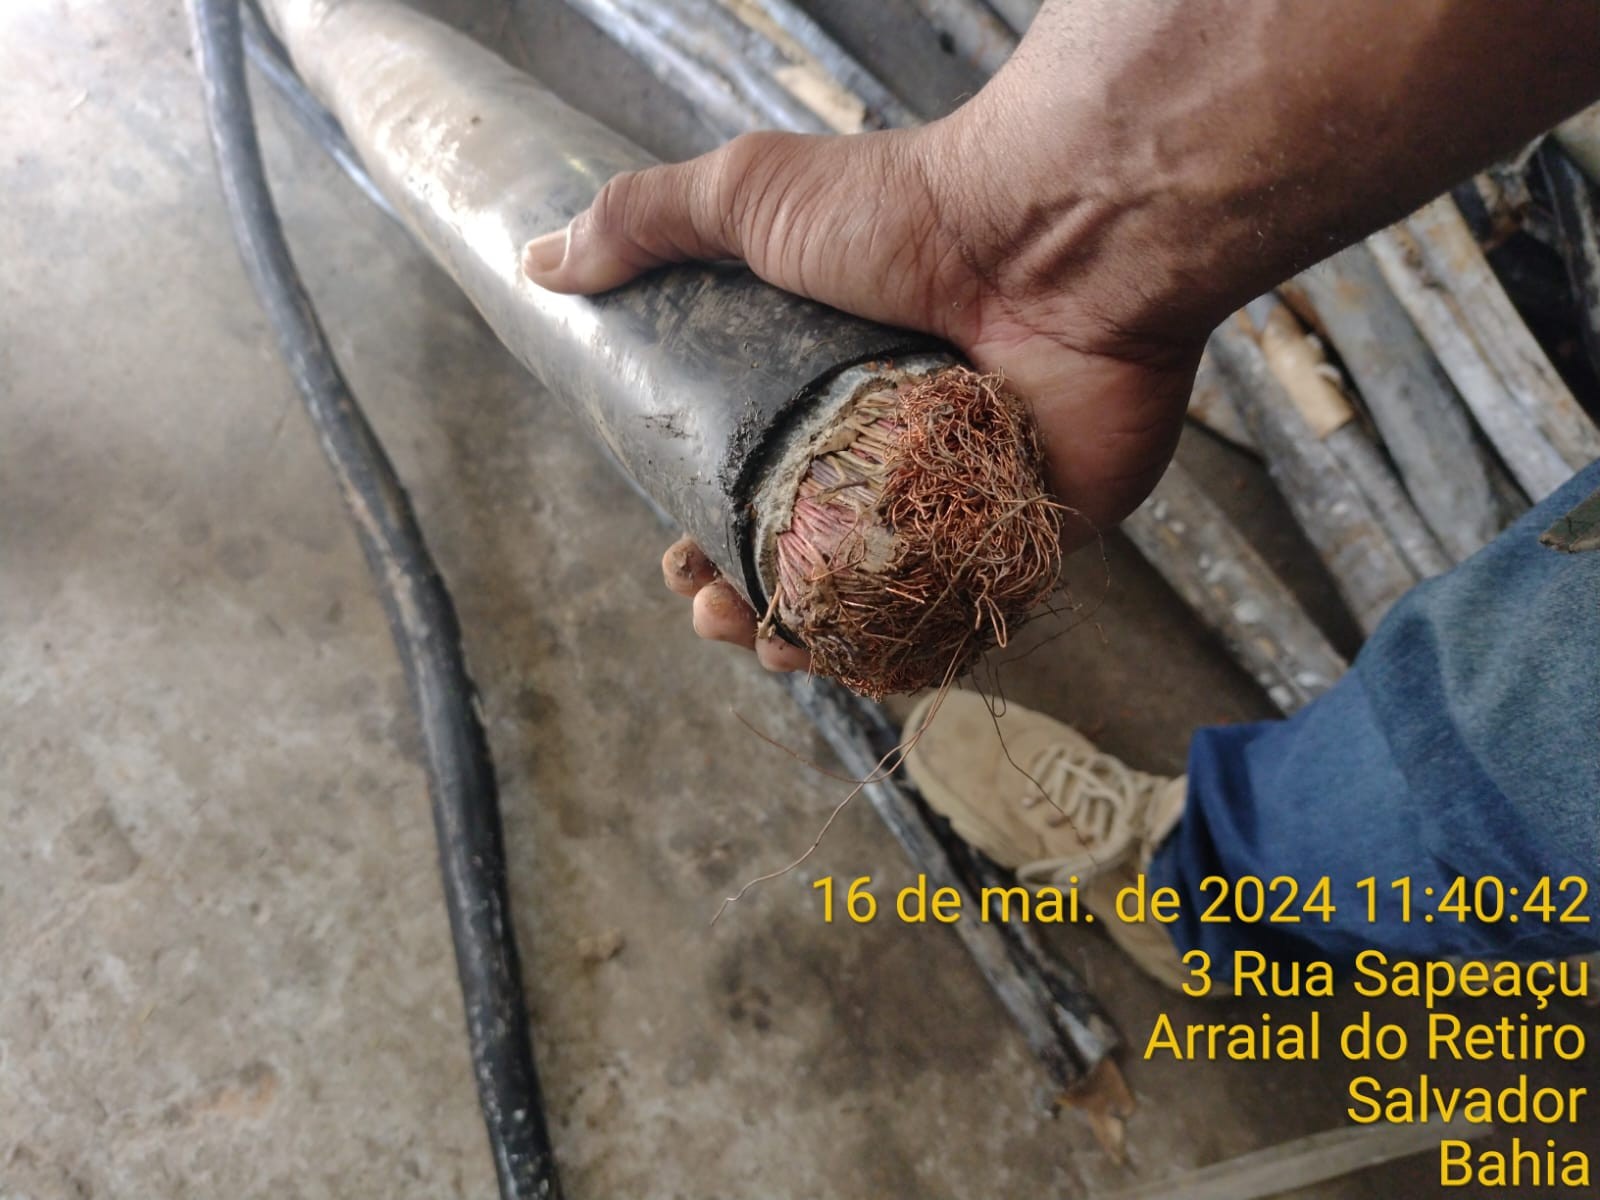 Aproximadamente 11 toneladas de fios e cabos de telefonia roubados são apreendidos em Salvador